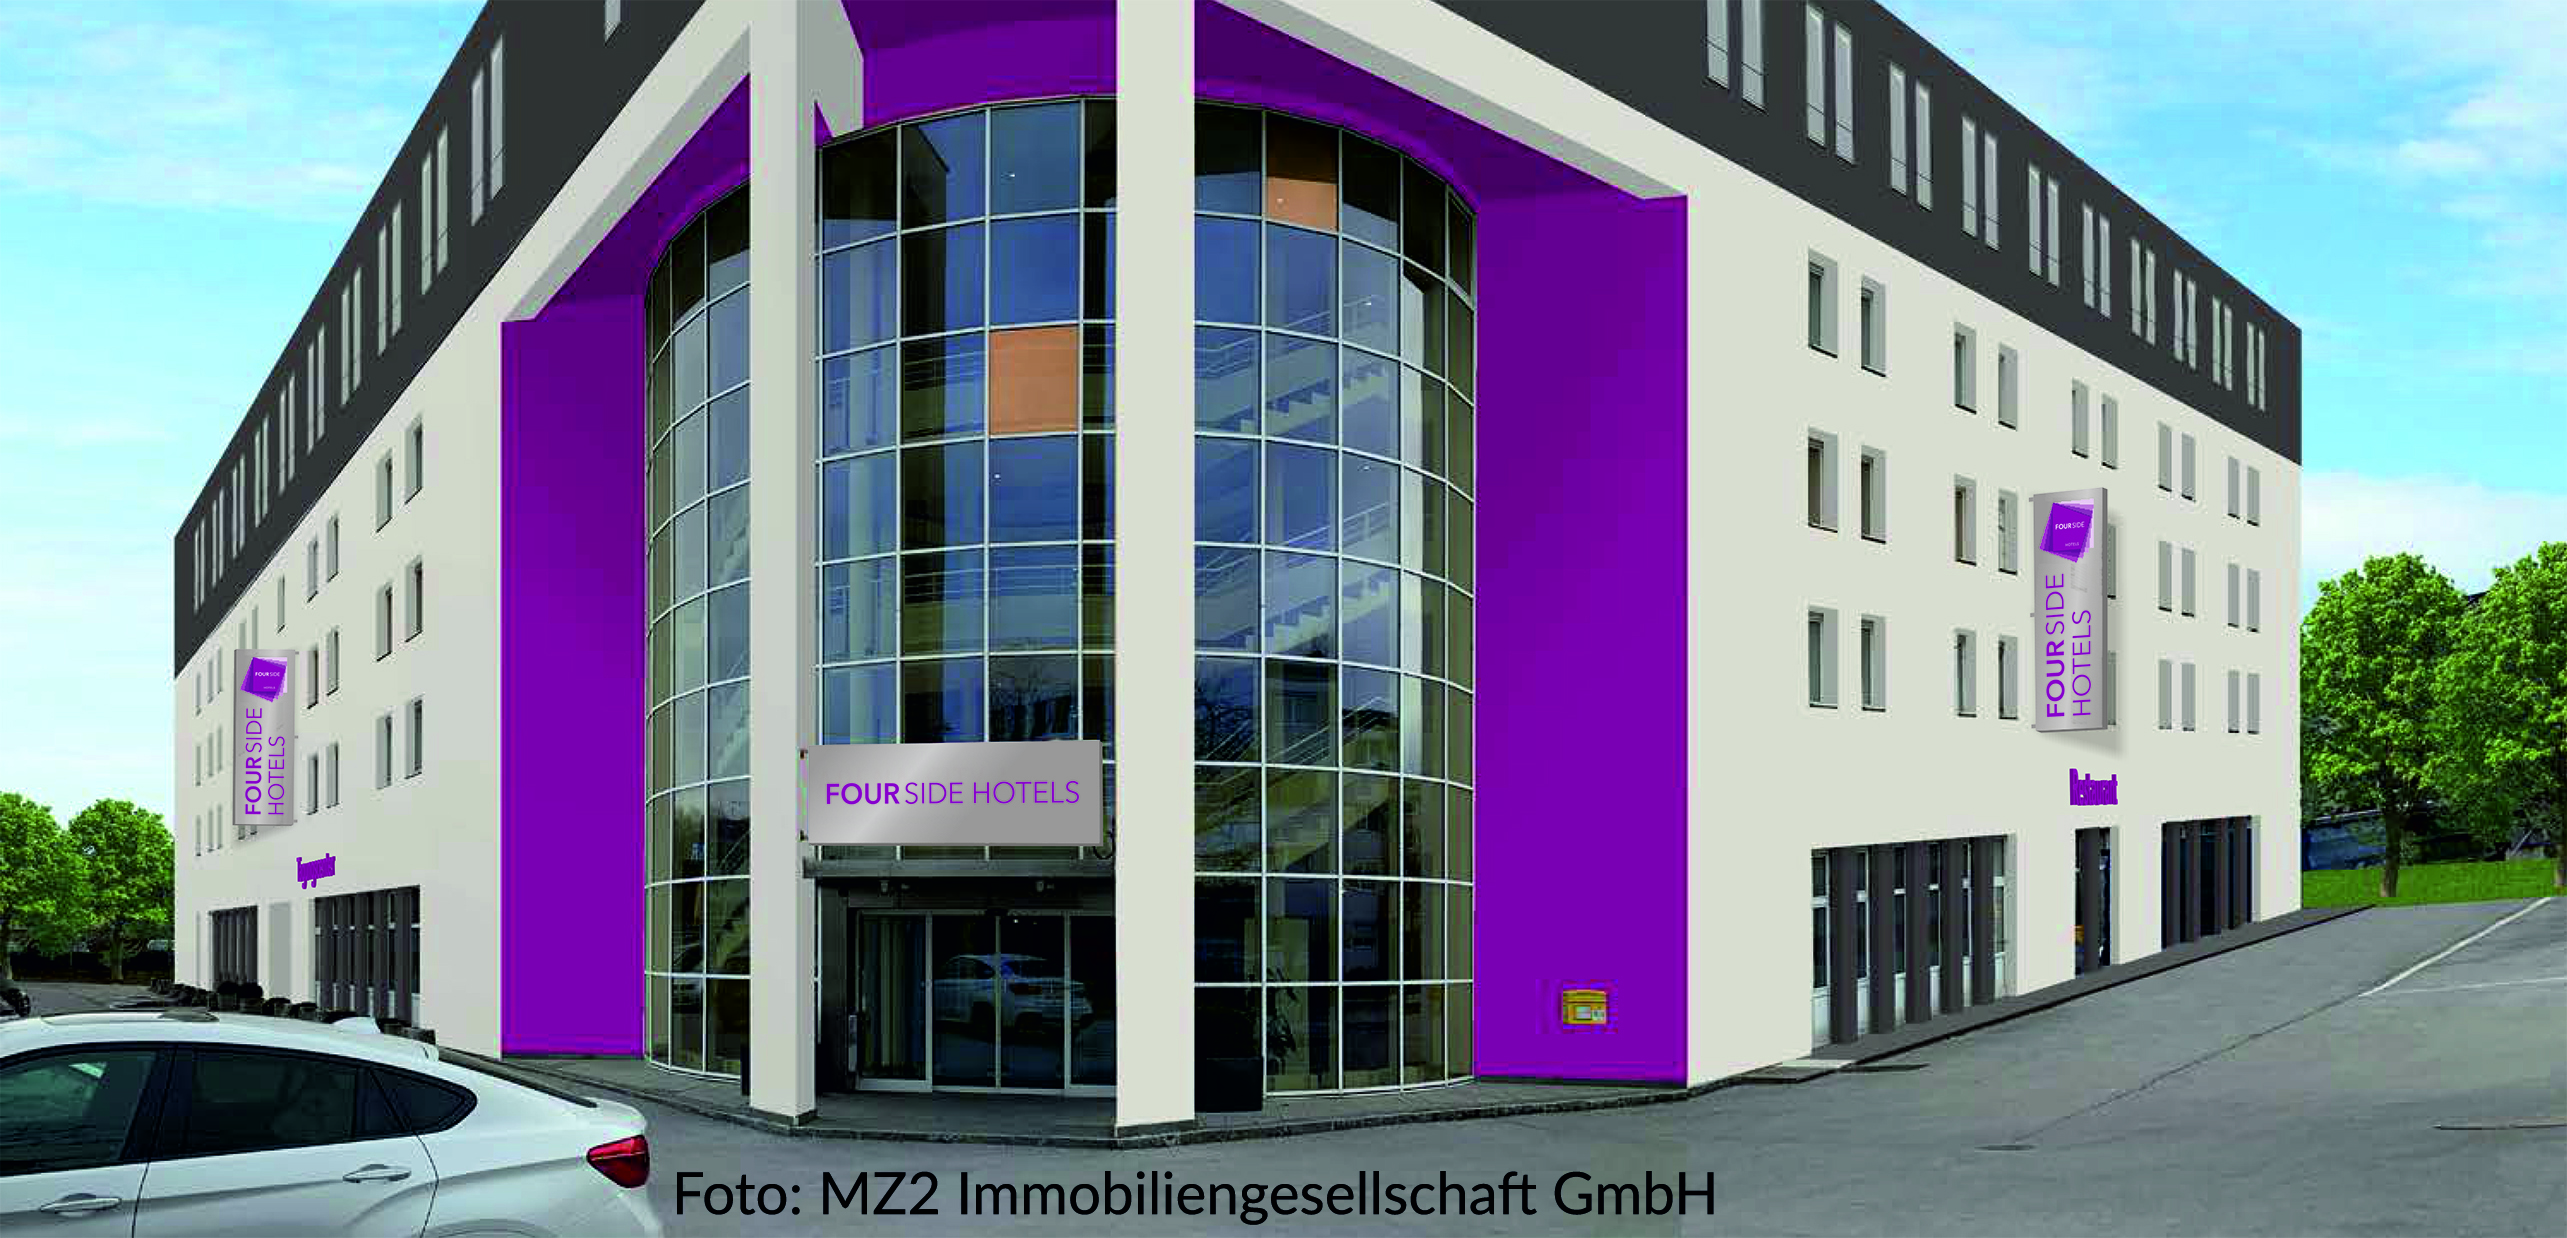  Seminarhotel FourSide Hotel Salzburg